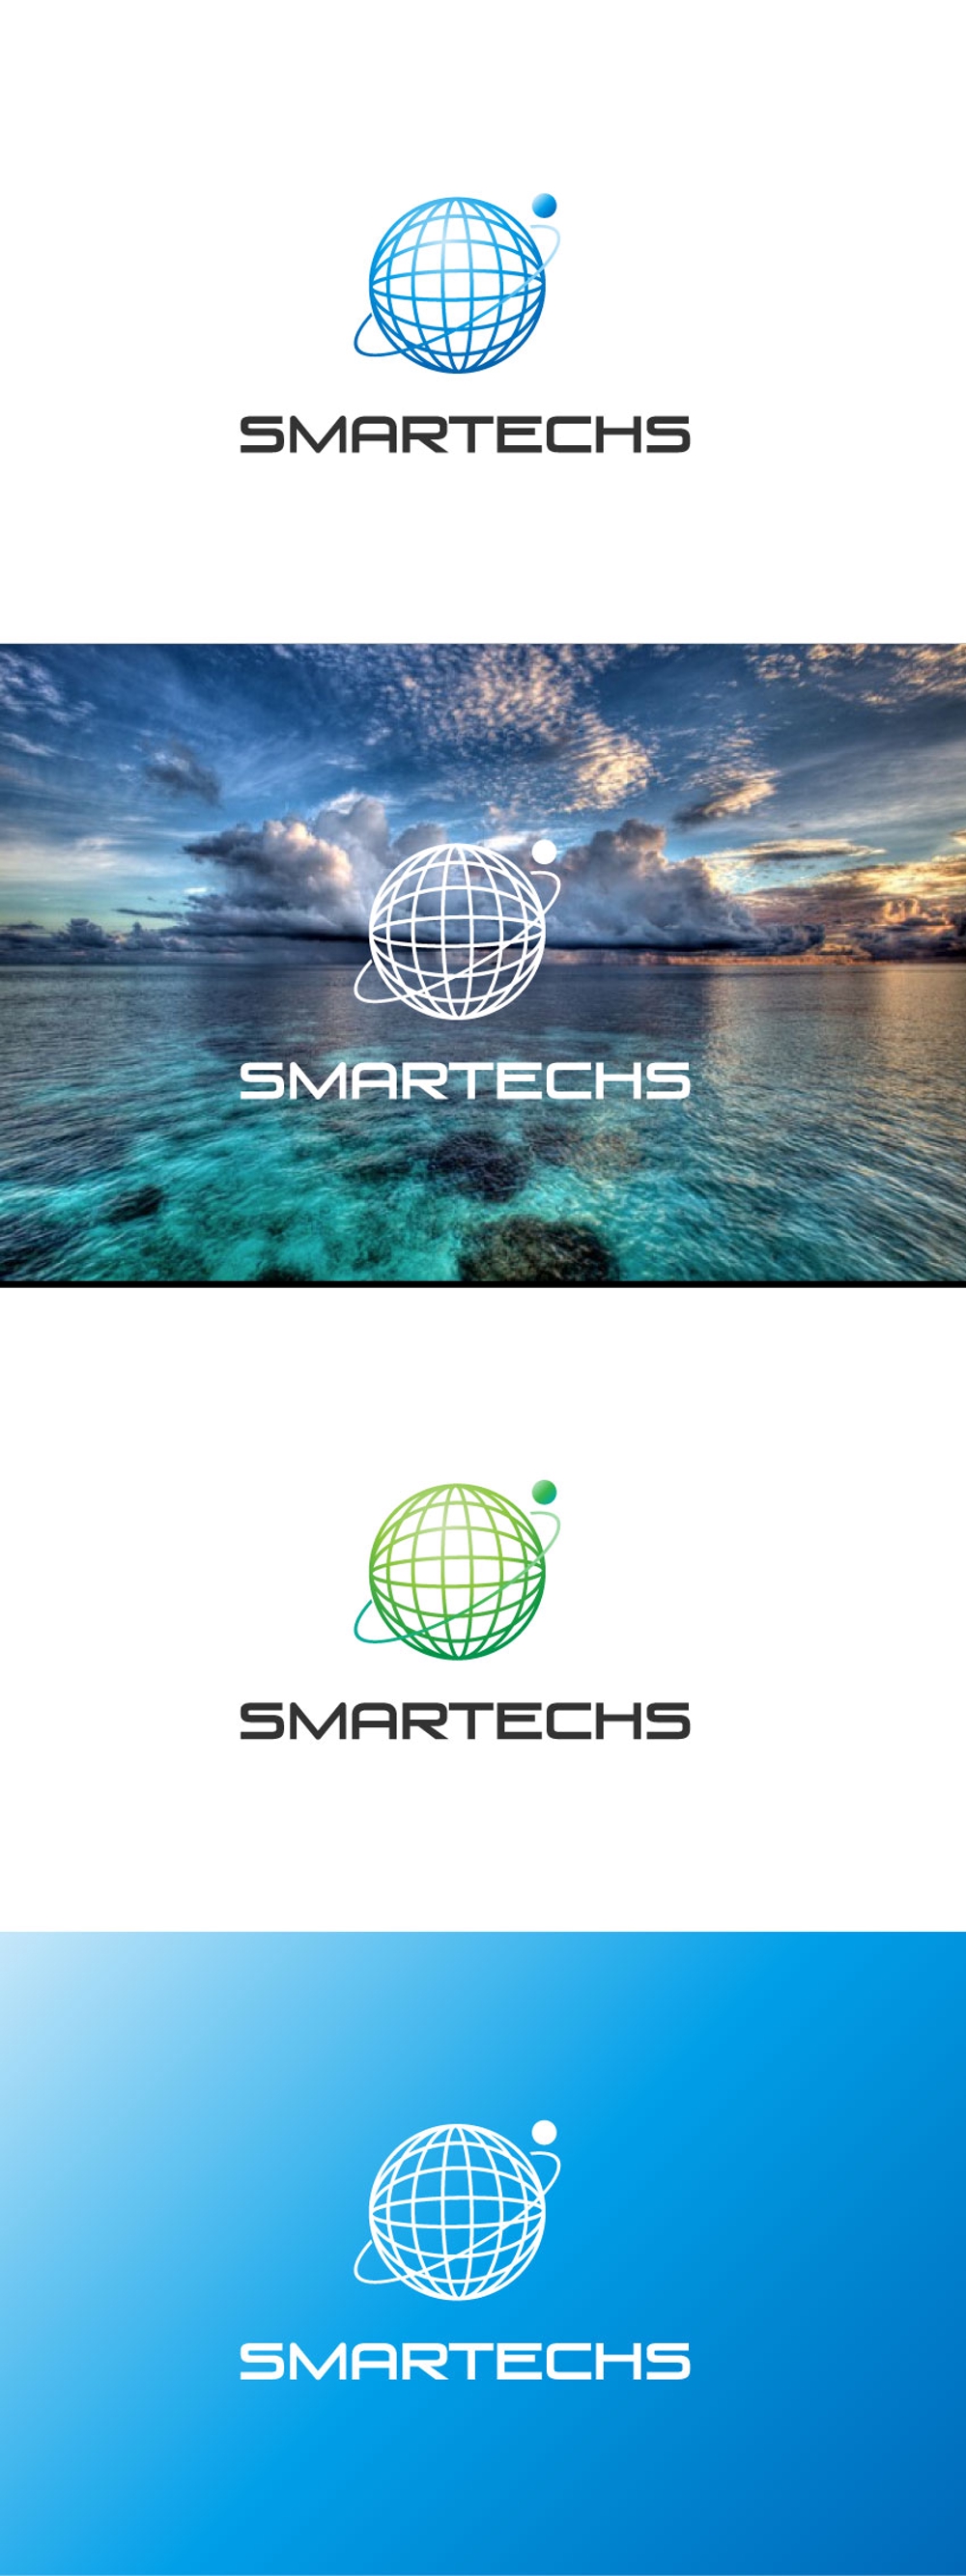 SMARTECHS-02.jpg